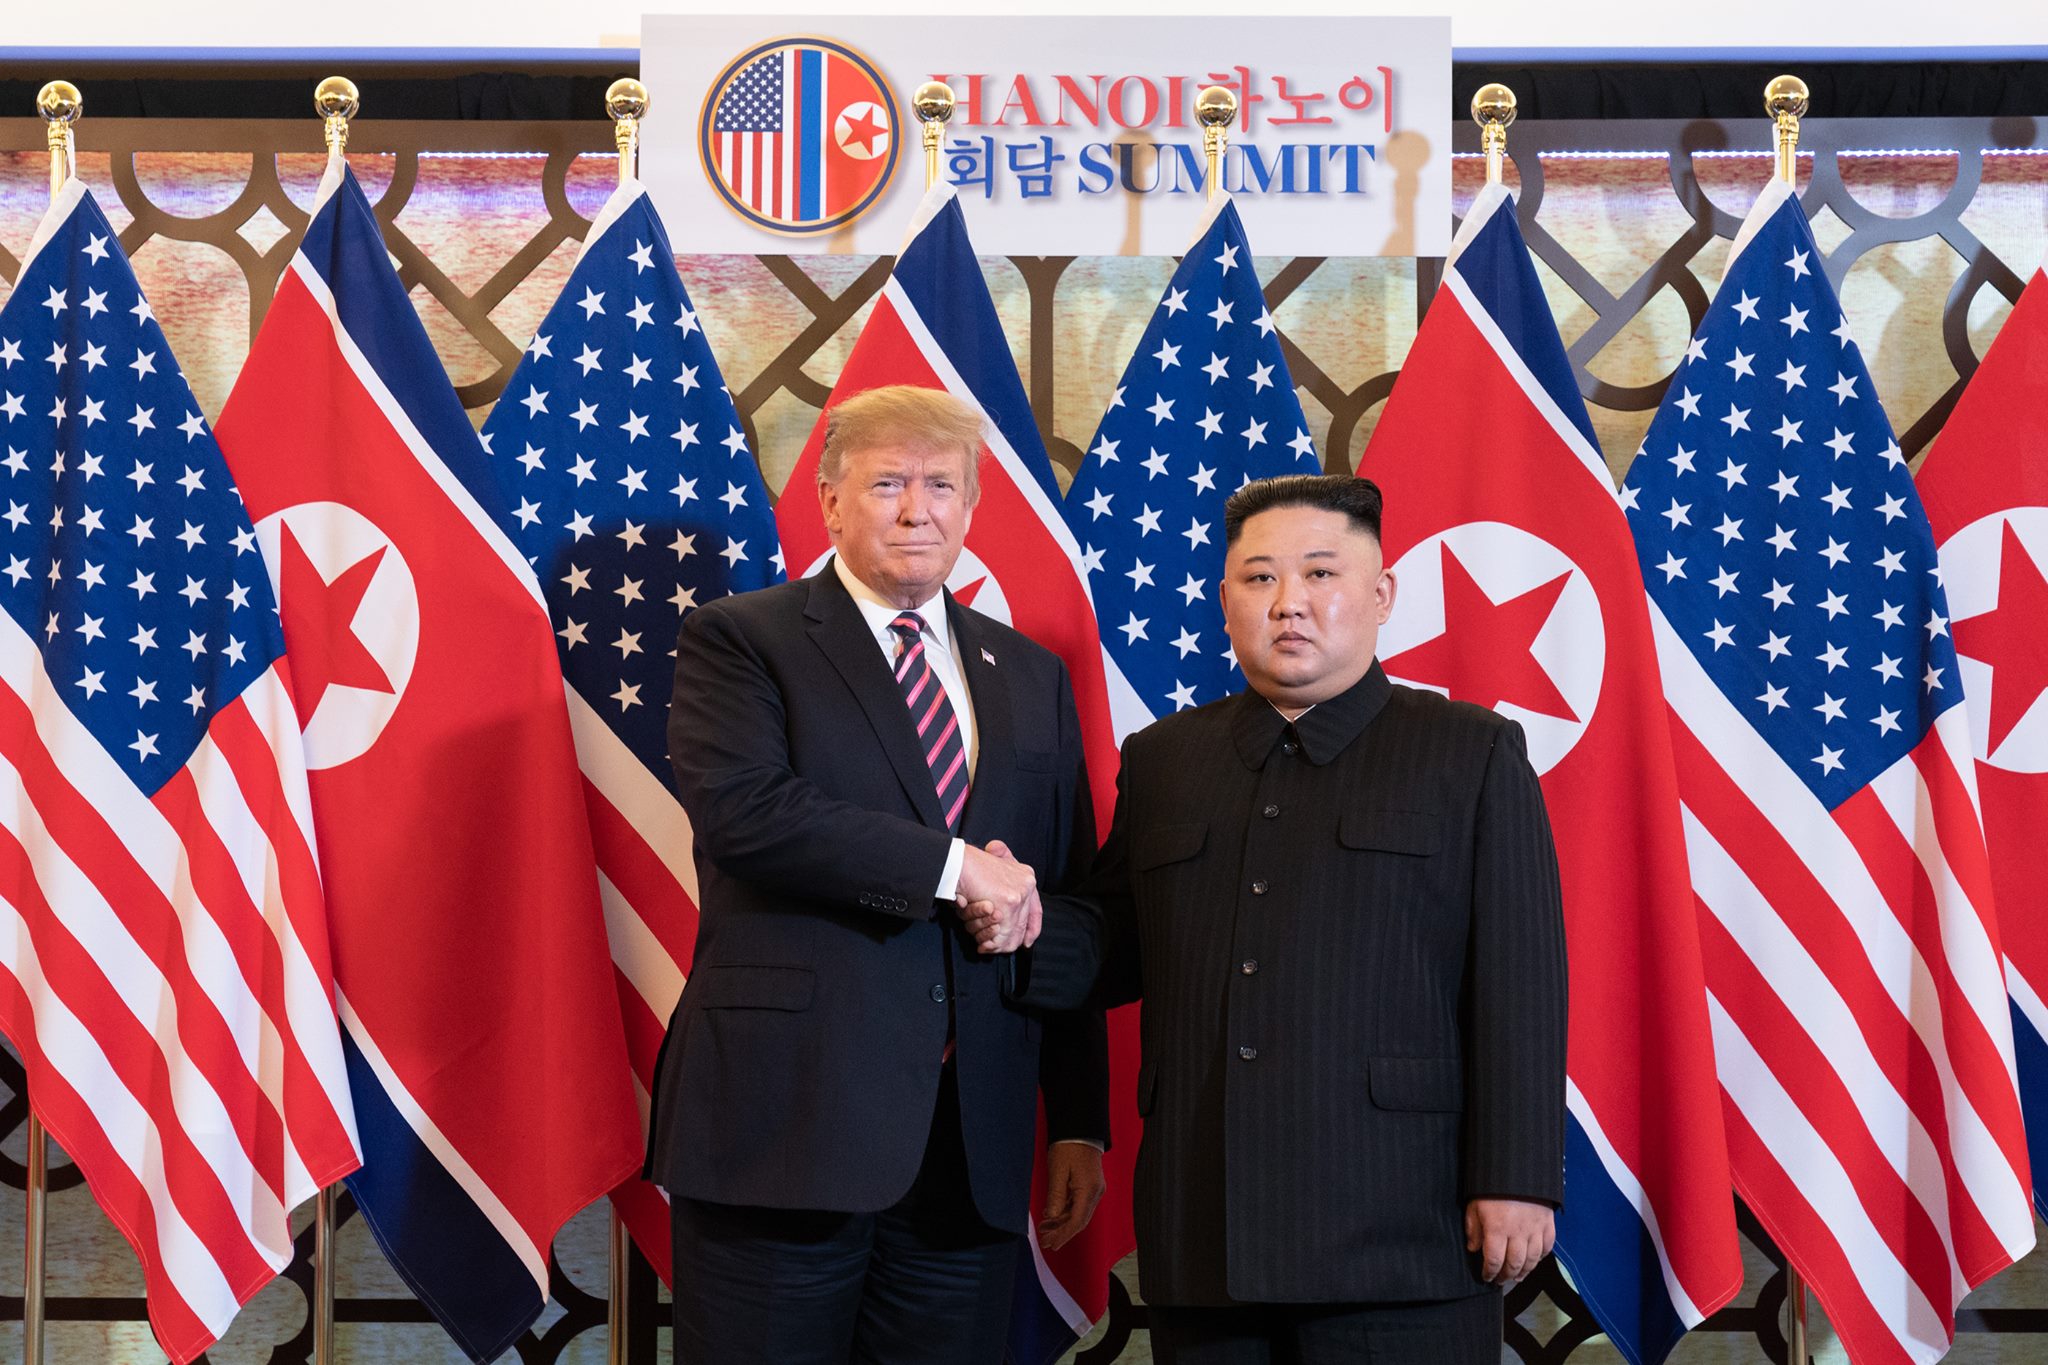 Donald Trump và Kim Jong Un bắt tay nhau tại Thượng đỉnh Mỹ-Triều lần 2 tại Hà Nội (27,28 tháng 2 năm 2019). Ảnh: Facebook White House)